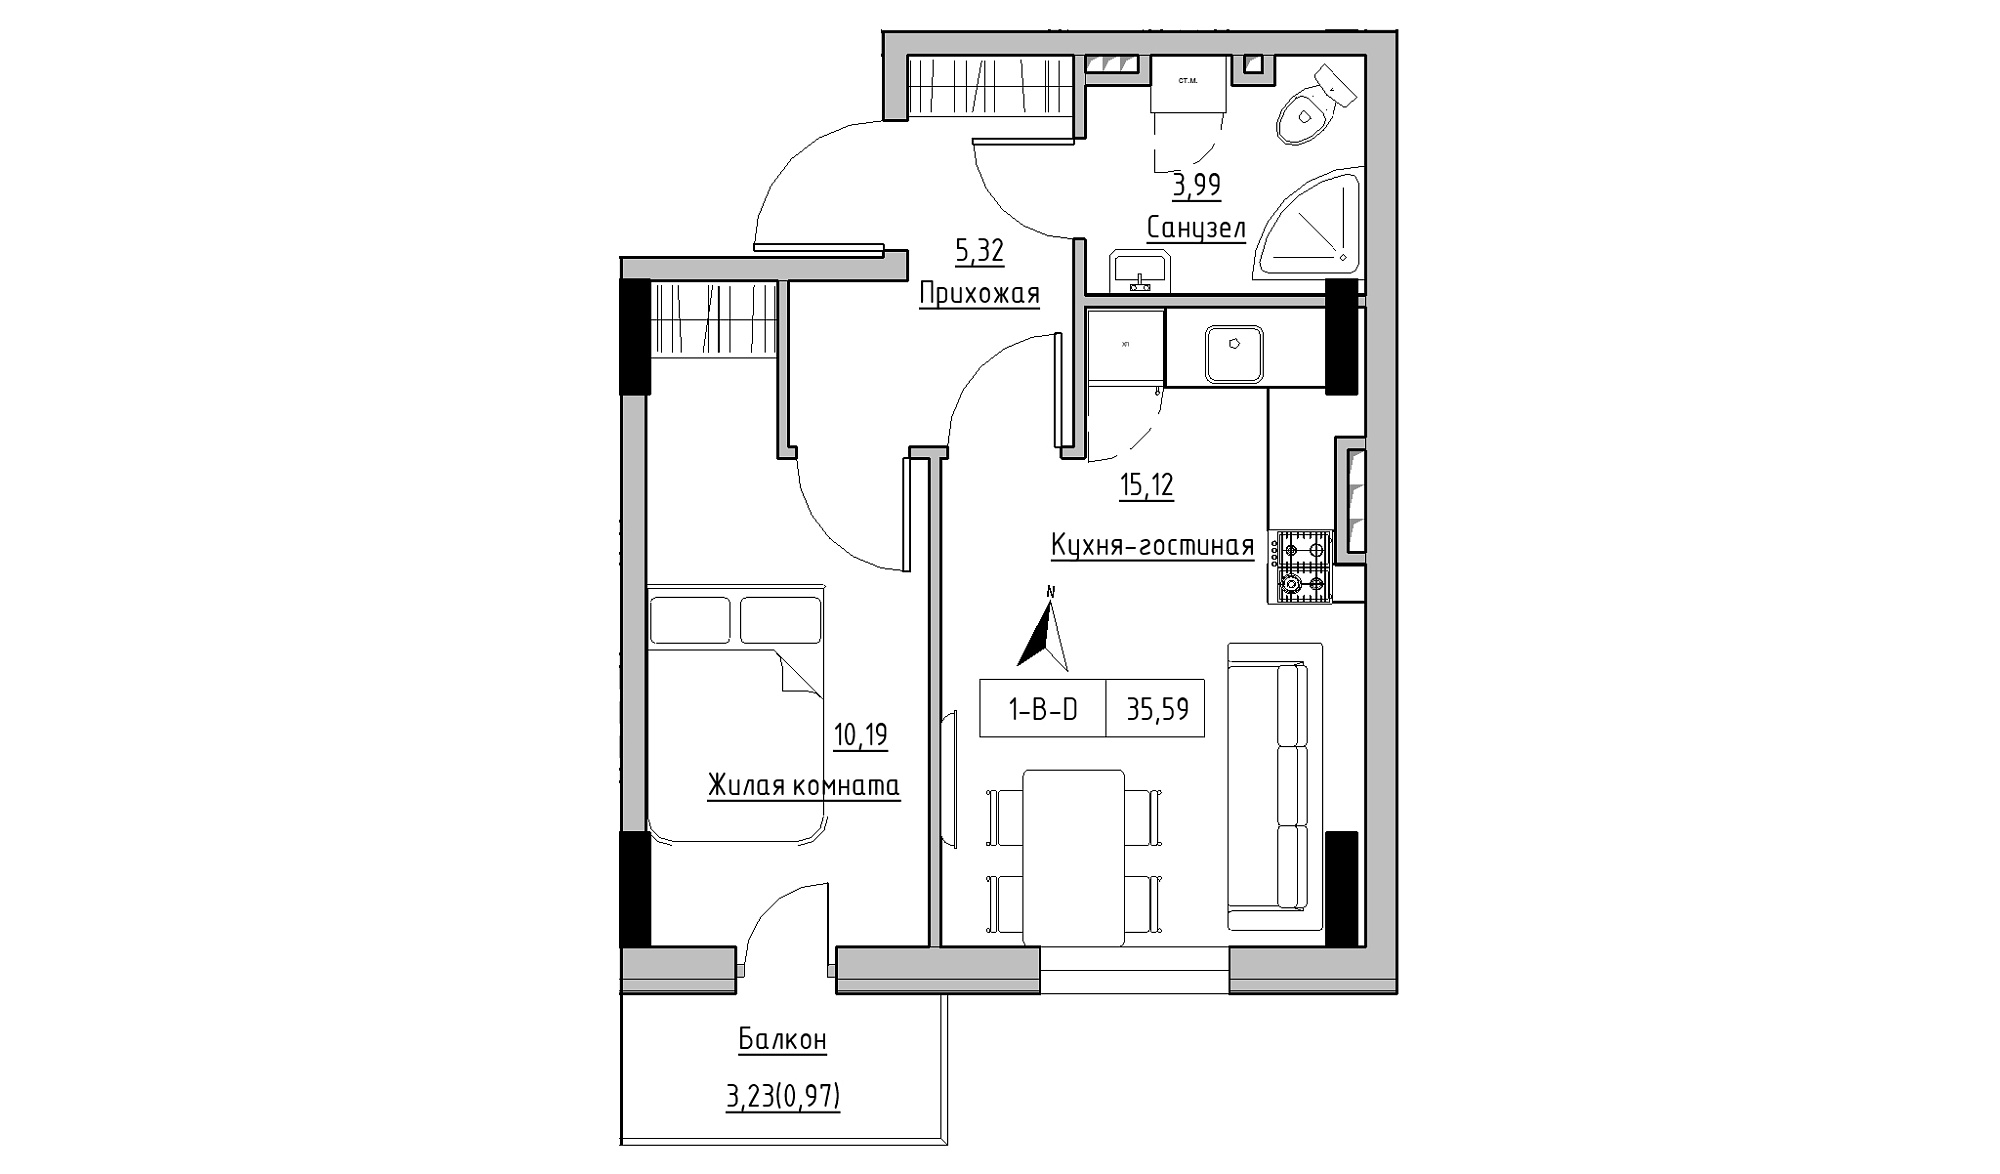 Планировка 1-к квартира площей 35.59м2, KS-025-03/0011.